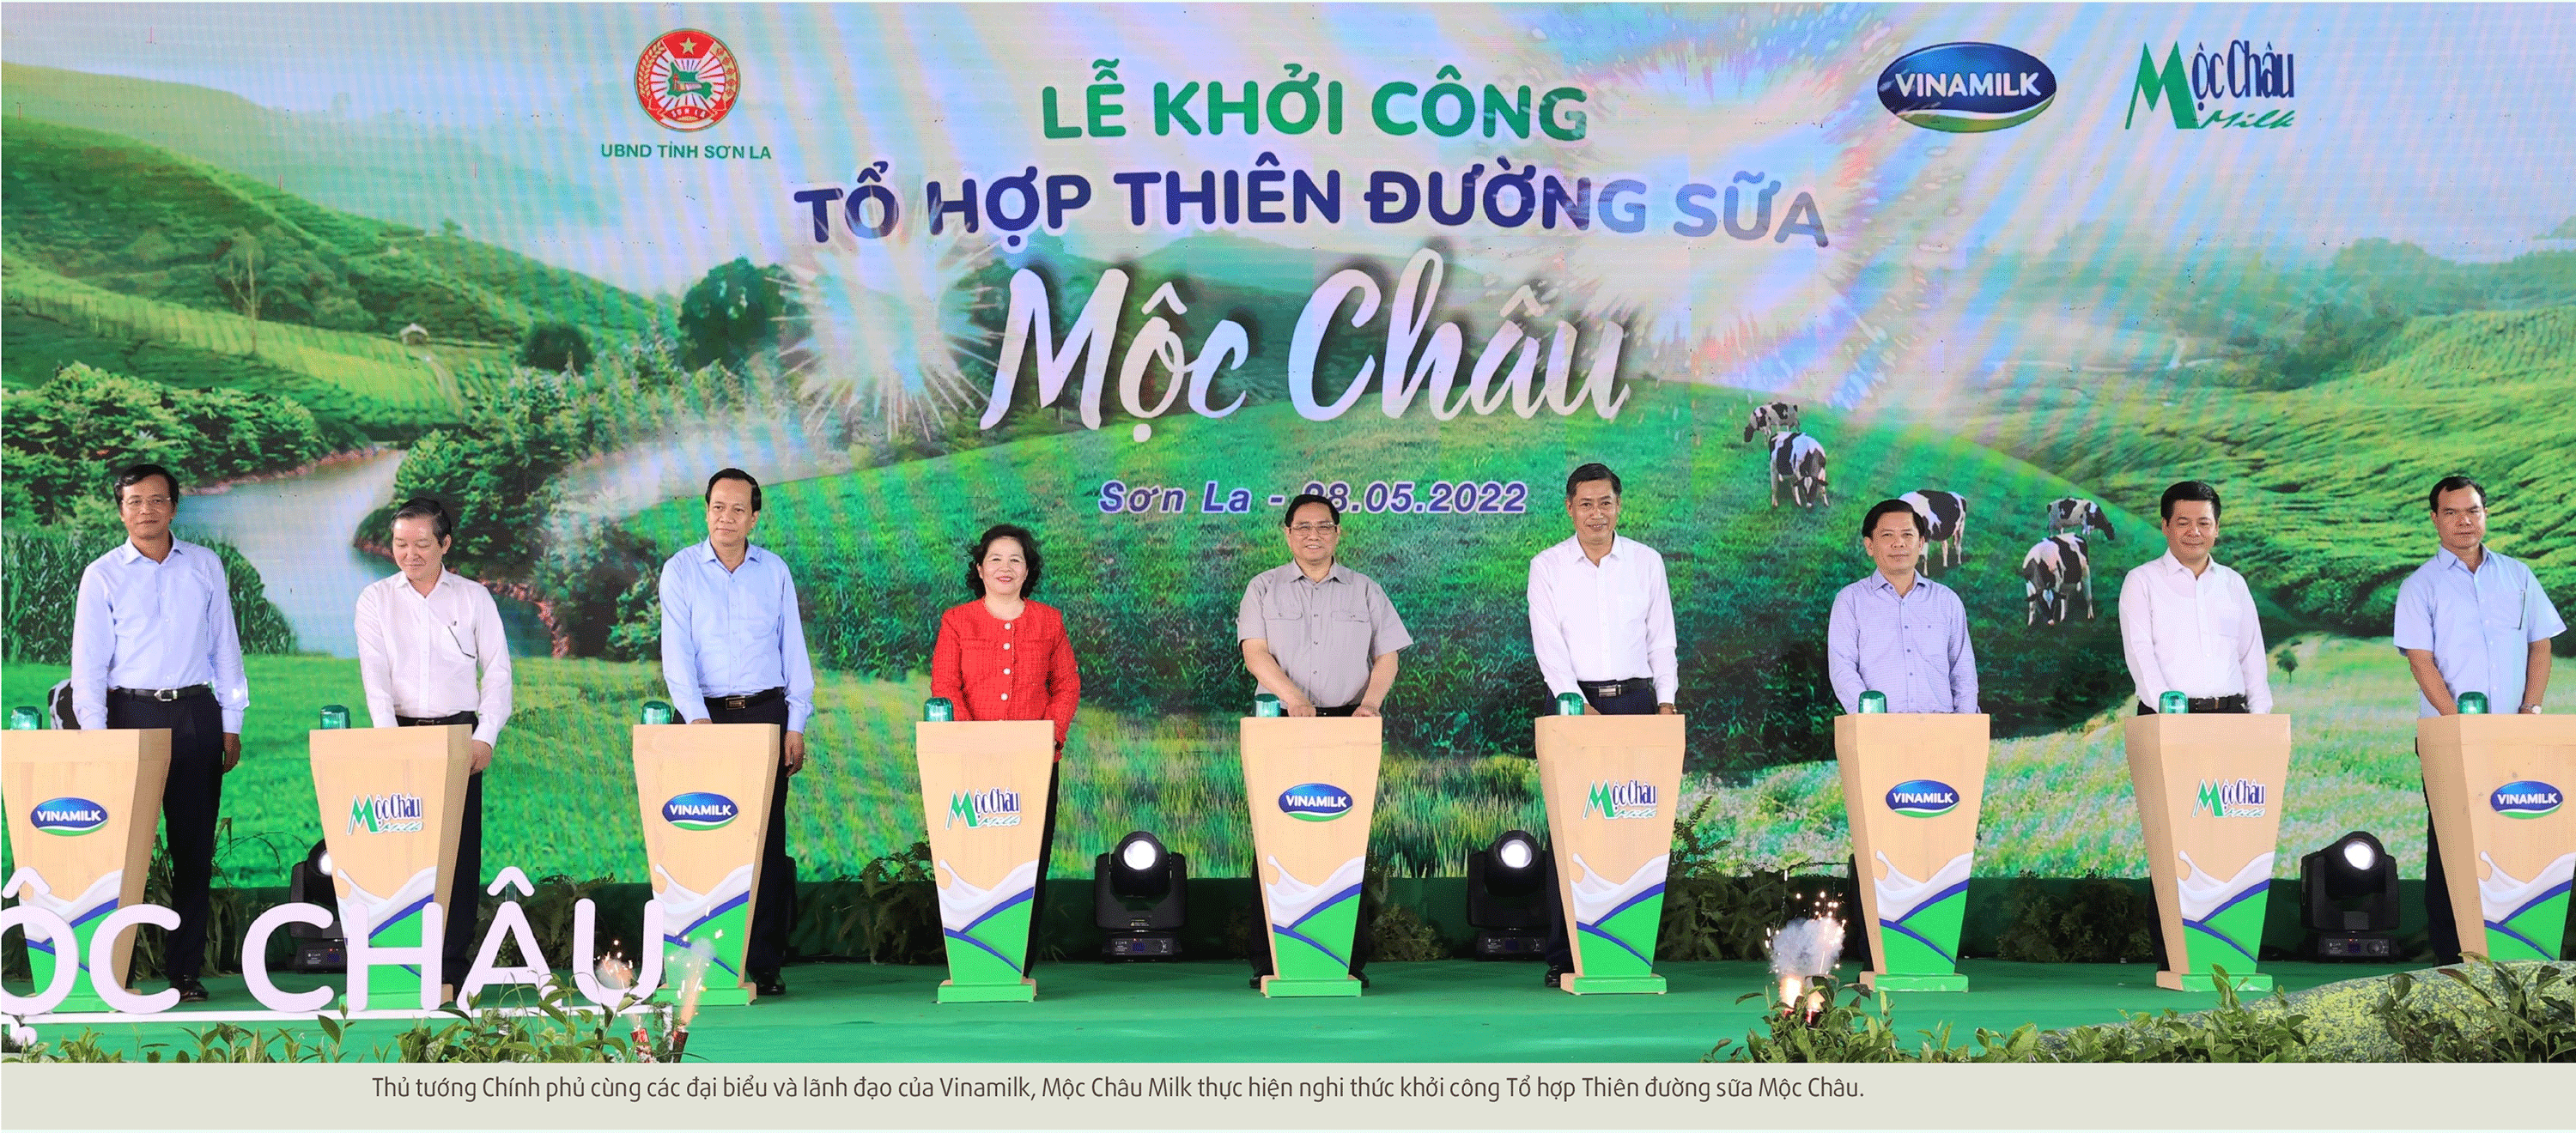 Thiên đường sữa Mộc Châu - điểm nhấn mới của ngành sữa Việt Nam - Ảnh 7